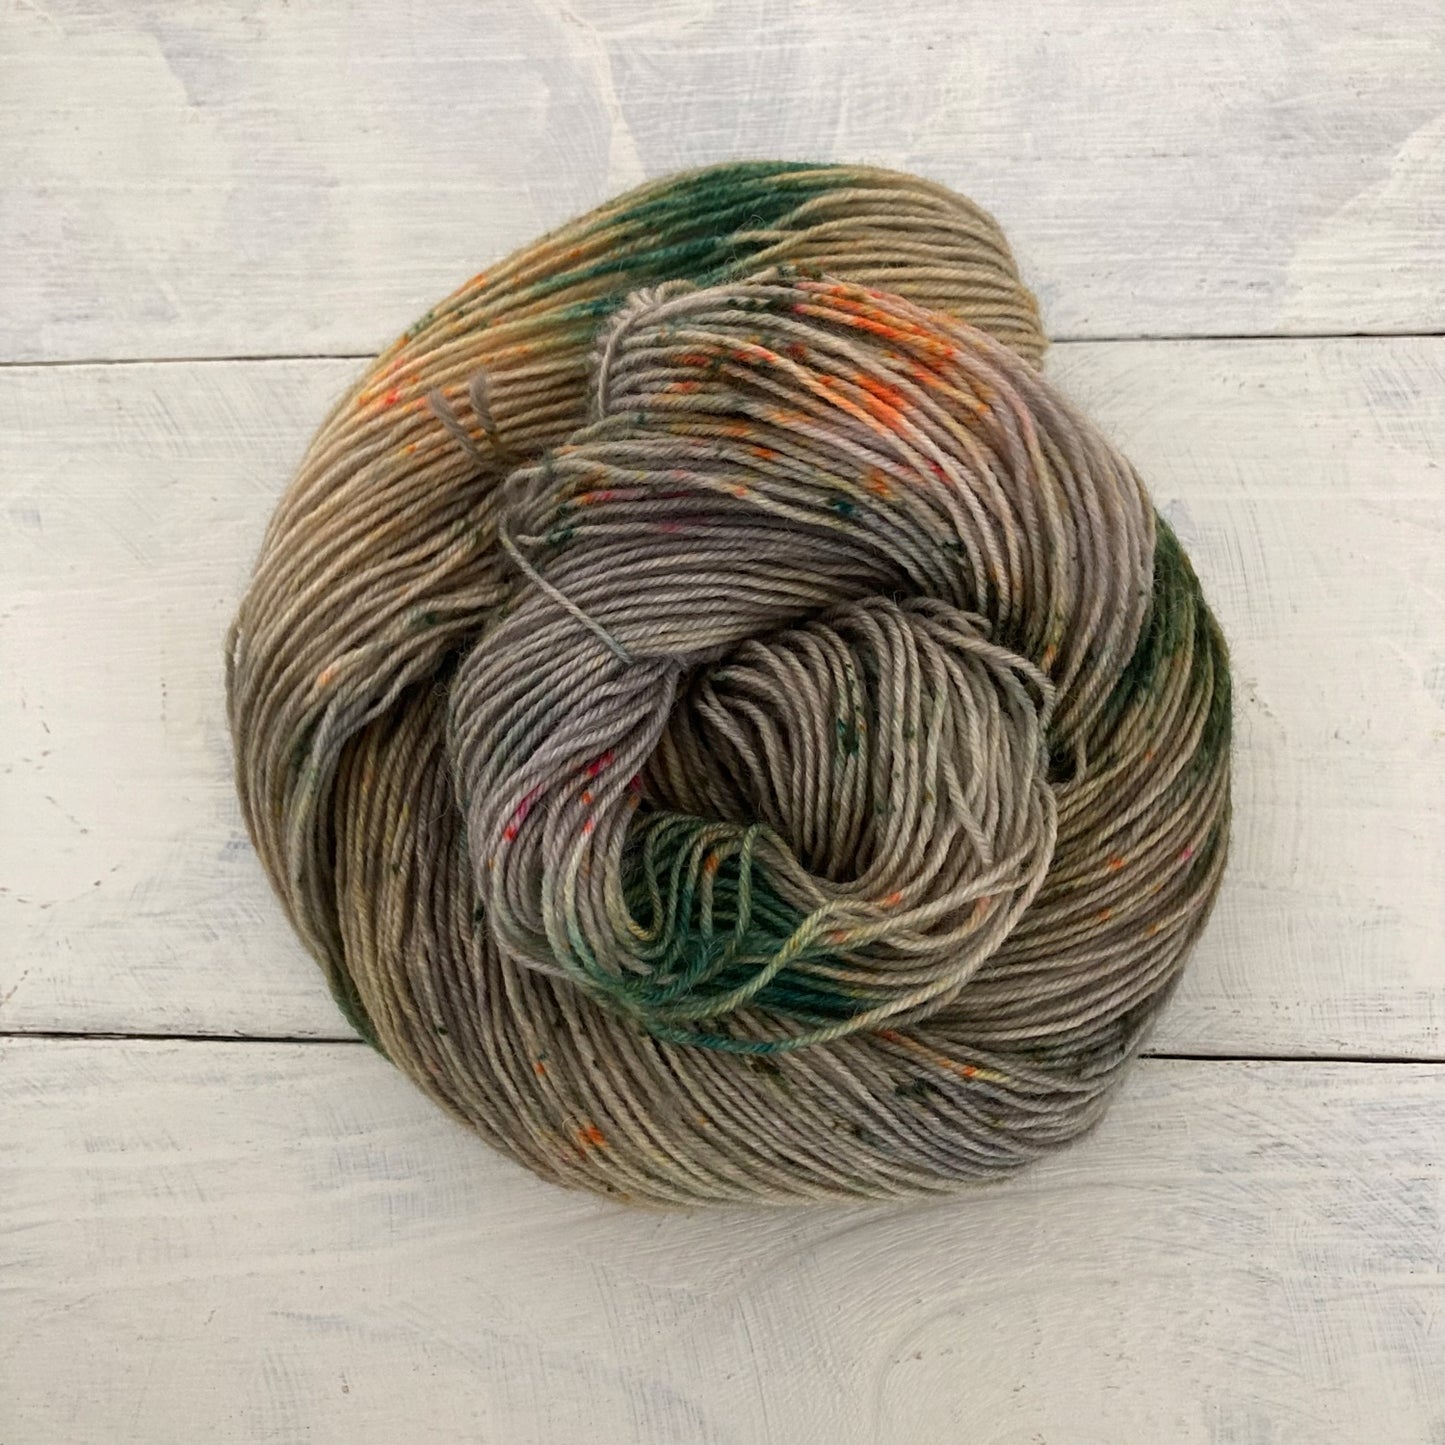 Hand dyed yarn No.187 sock yarn "In der Ferne"